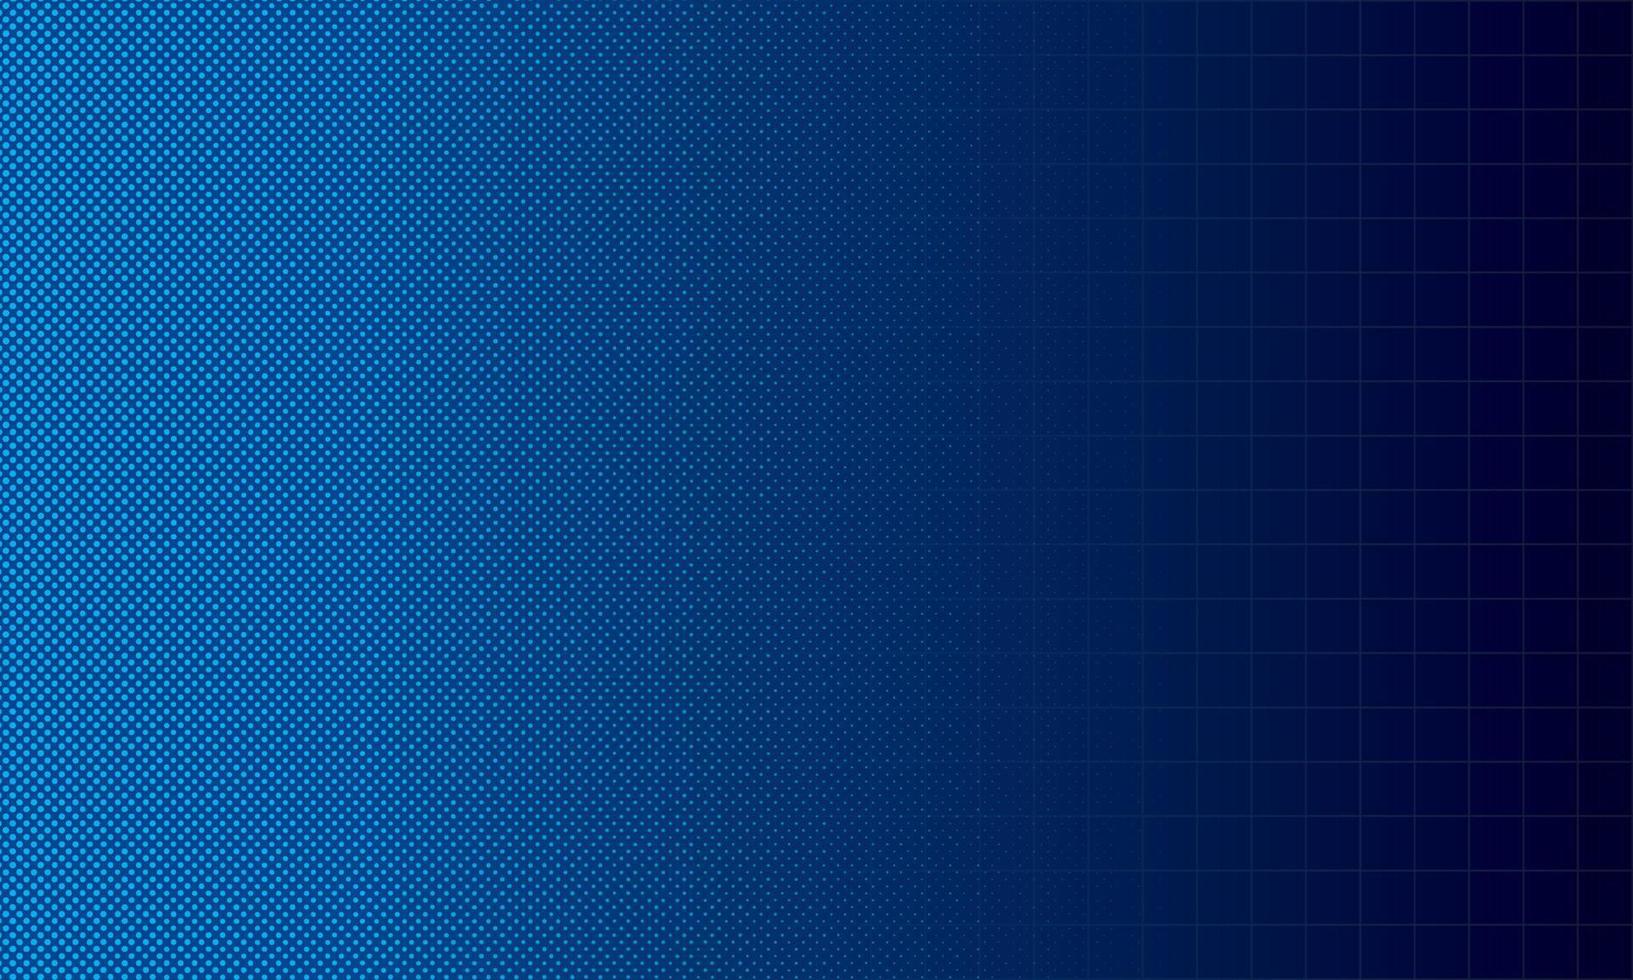 sfondo astratto di colore blu scuro con forma geometrica quadrata e circolare. illustrazione vettoriale. vettore